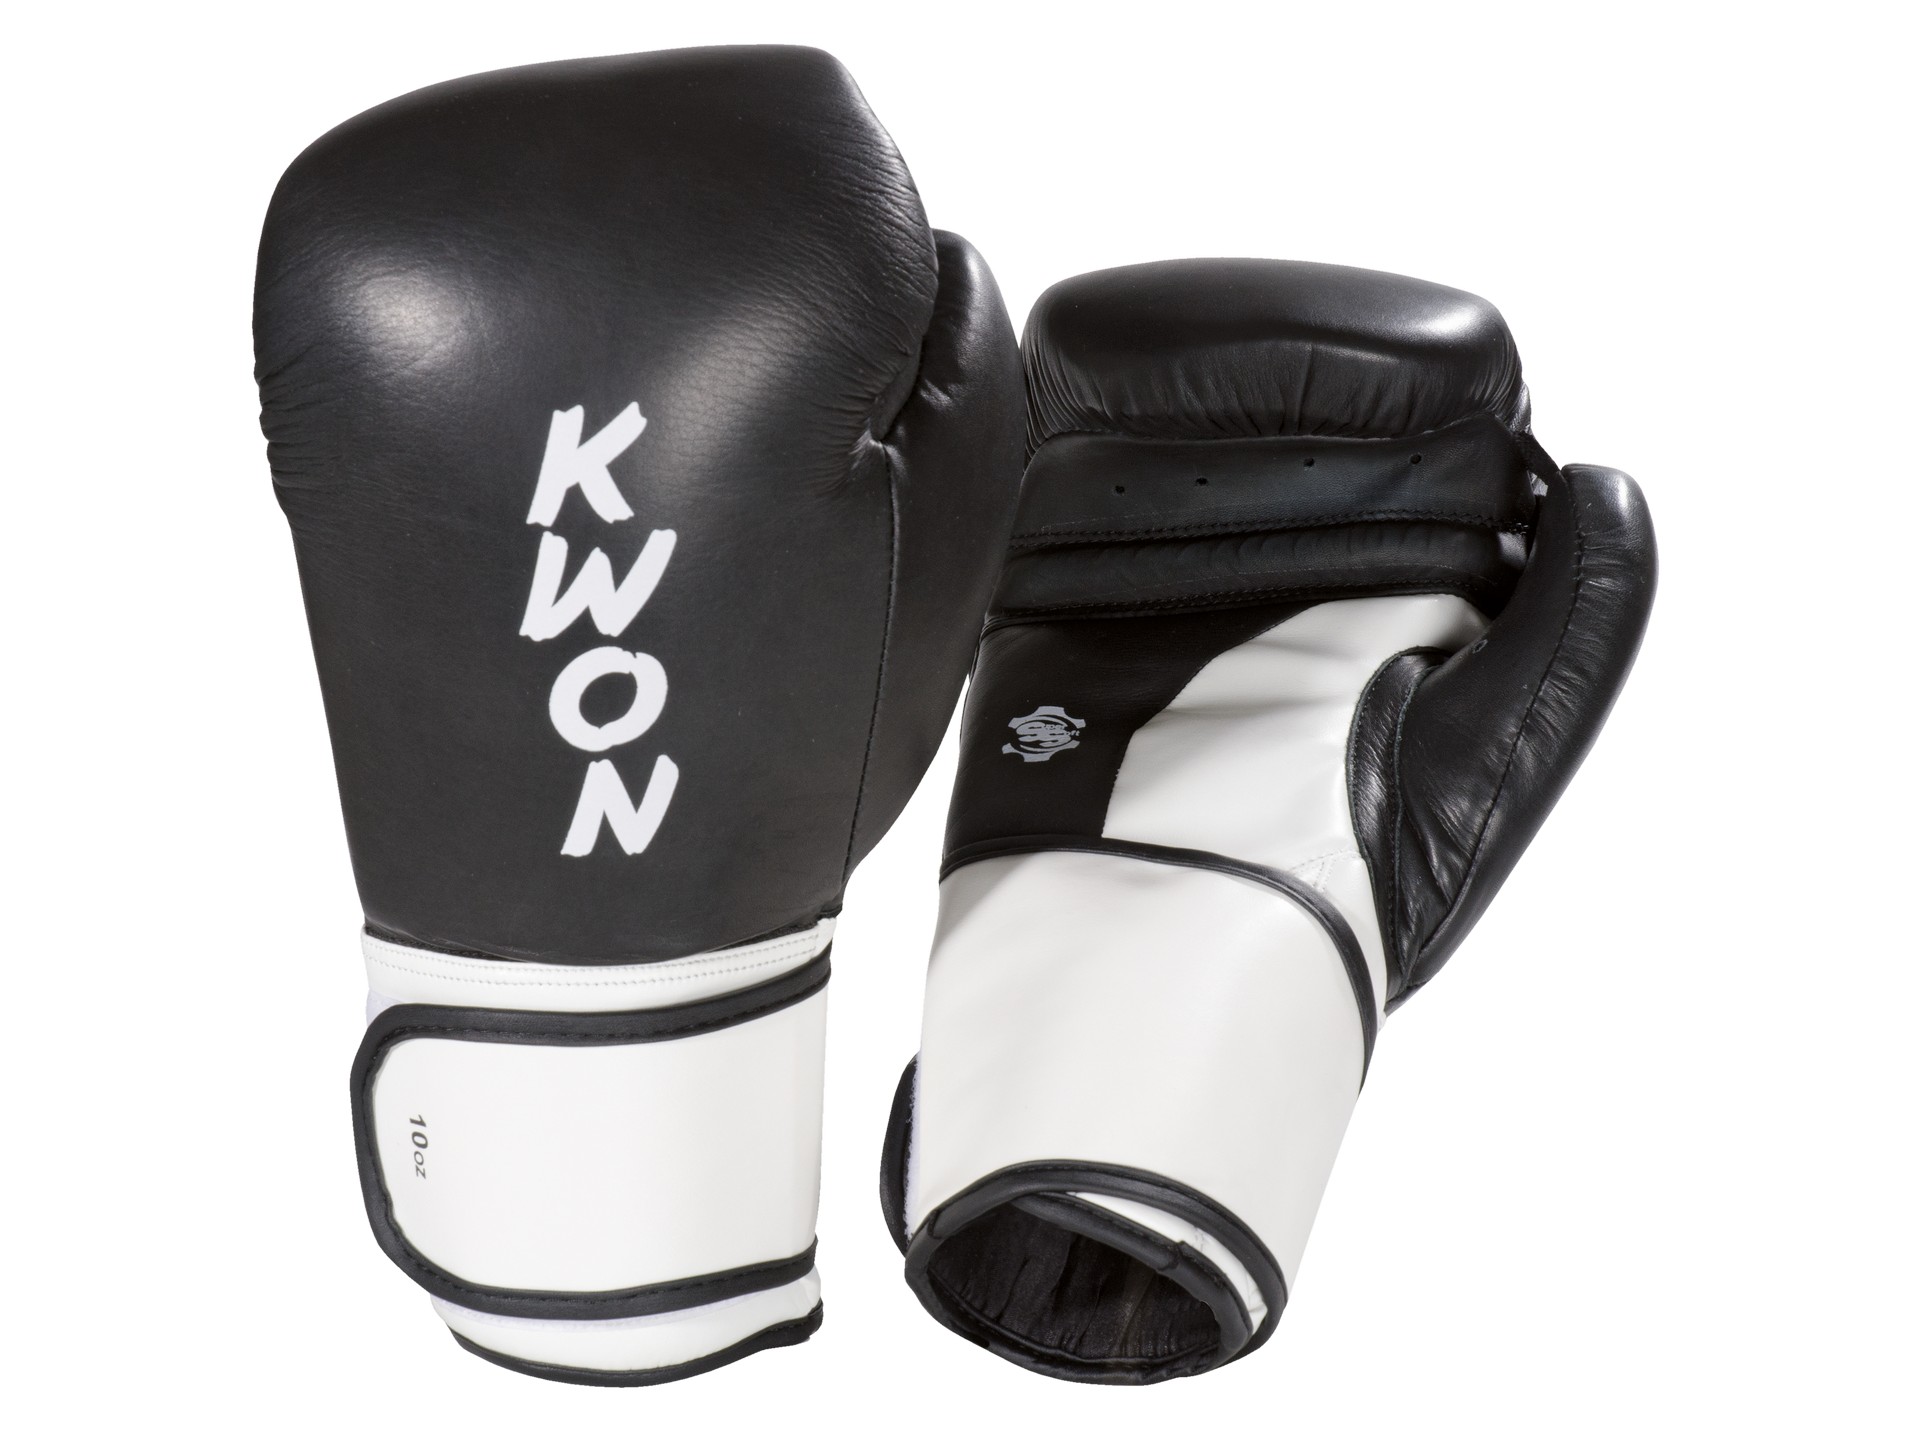 KWON Boxhandschuhe Super | anerkannt Boxen Champ WKU | Wettkampfhandschuhe Kickboxen Thai 